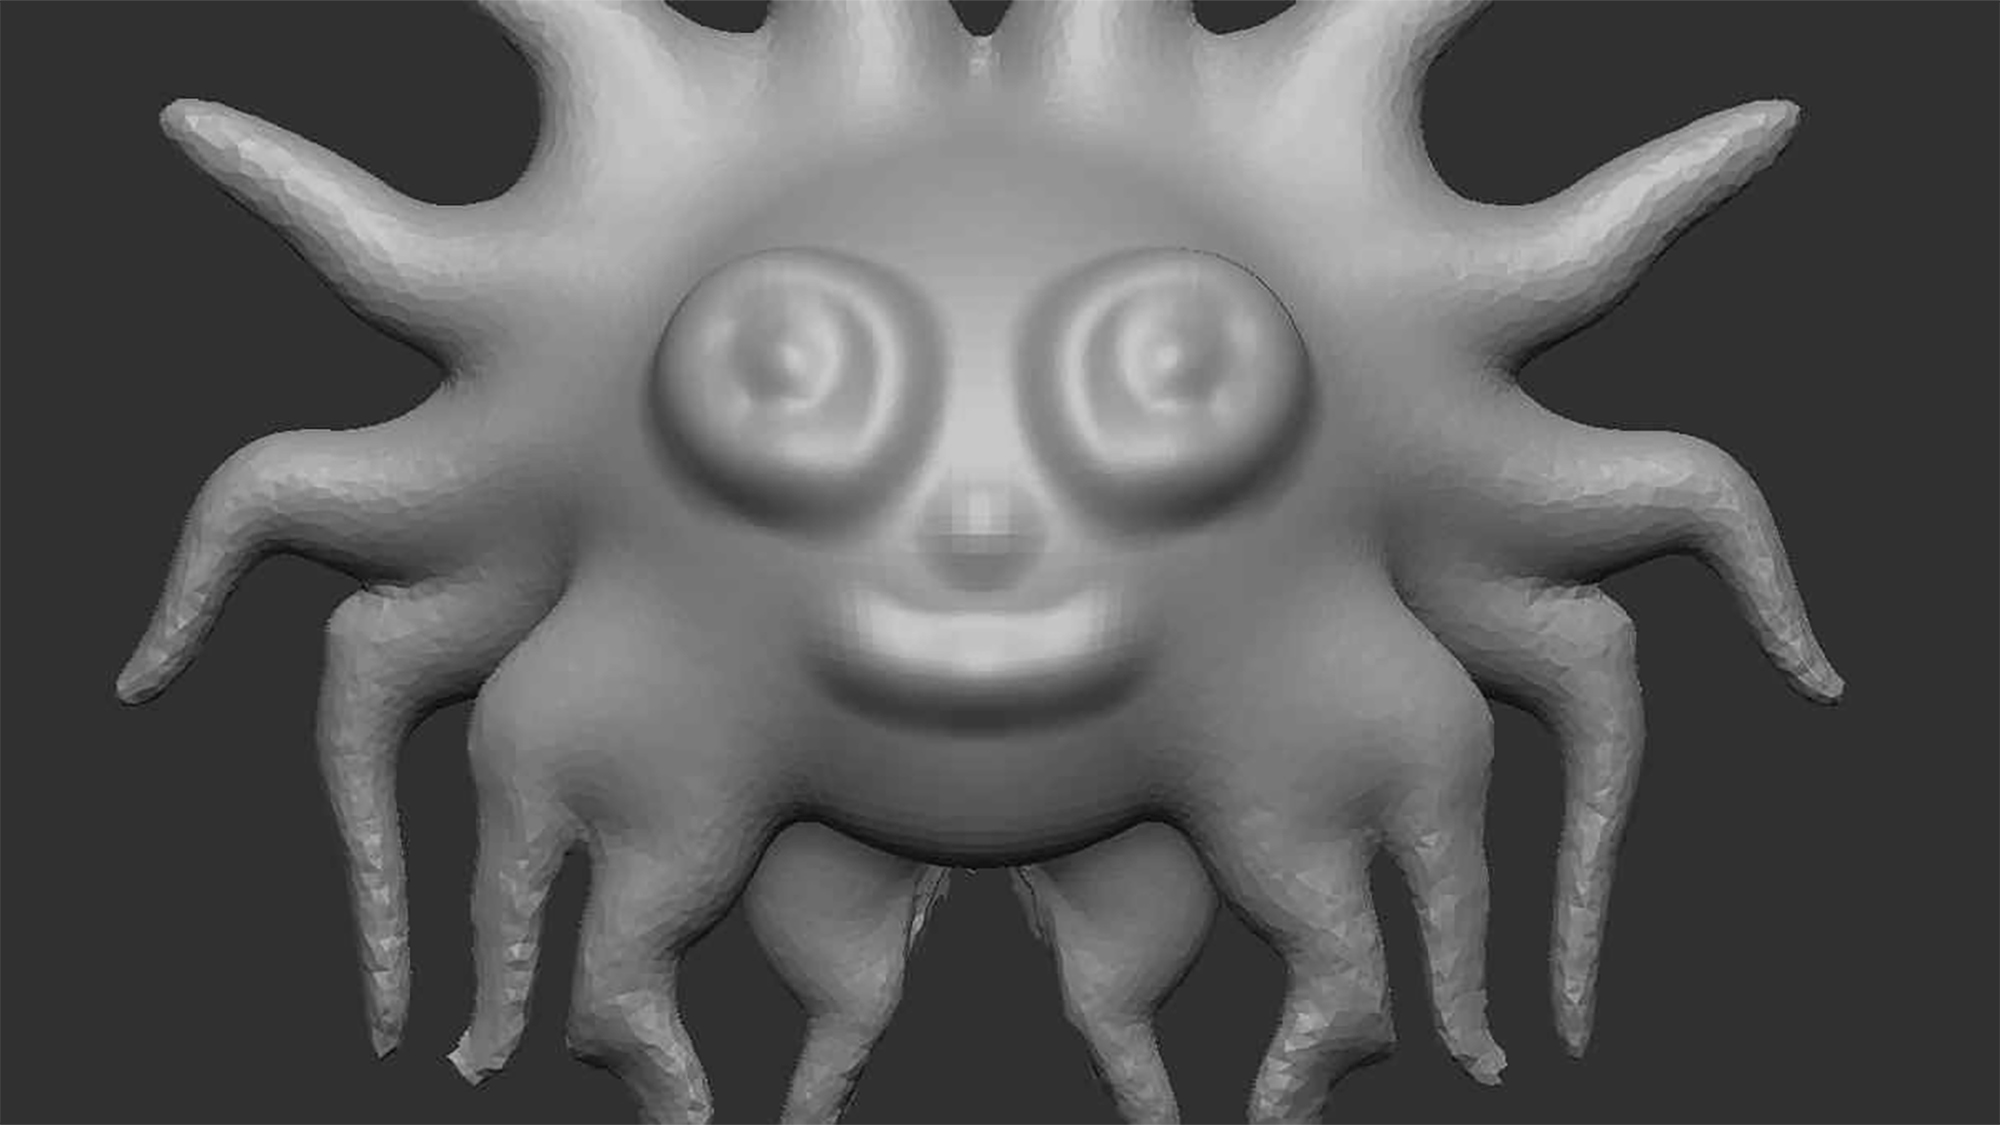 Egy renderelt 3D-s fantázialény mosolyog. A barátságos arcot körülvevő csápok a nap ábrázolására emlékeztetnek.